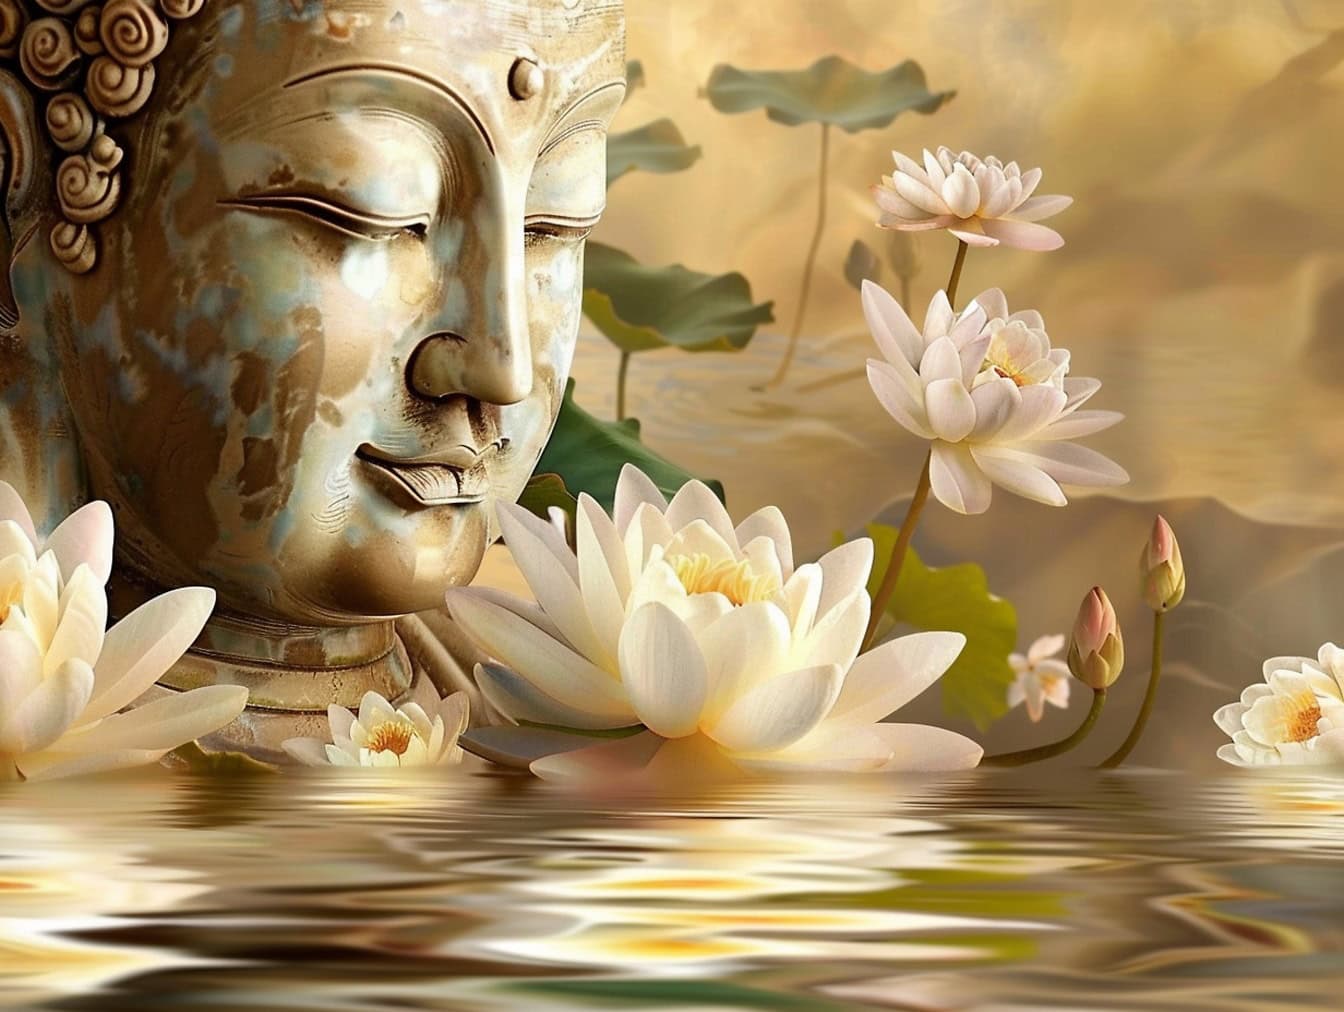 Statue av et hode av en Buddha med lukkede øyne omgitt av hvite lotusblomster